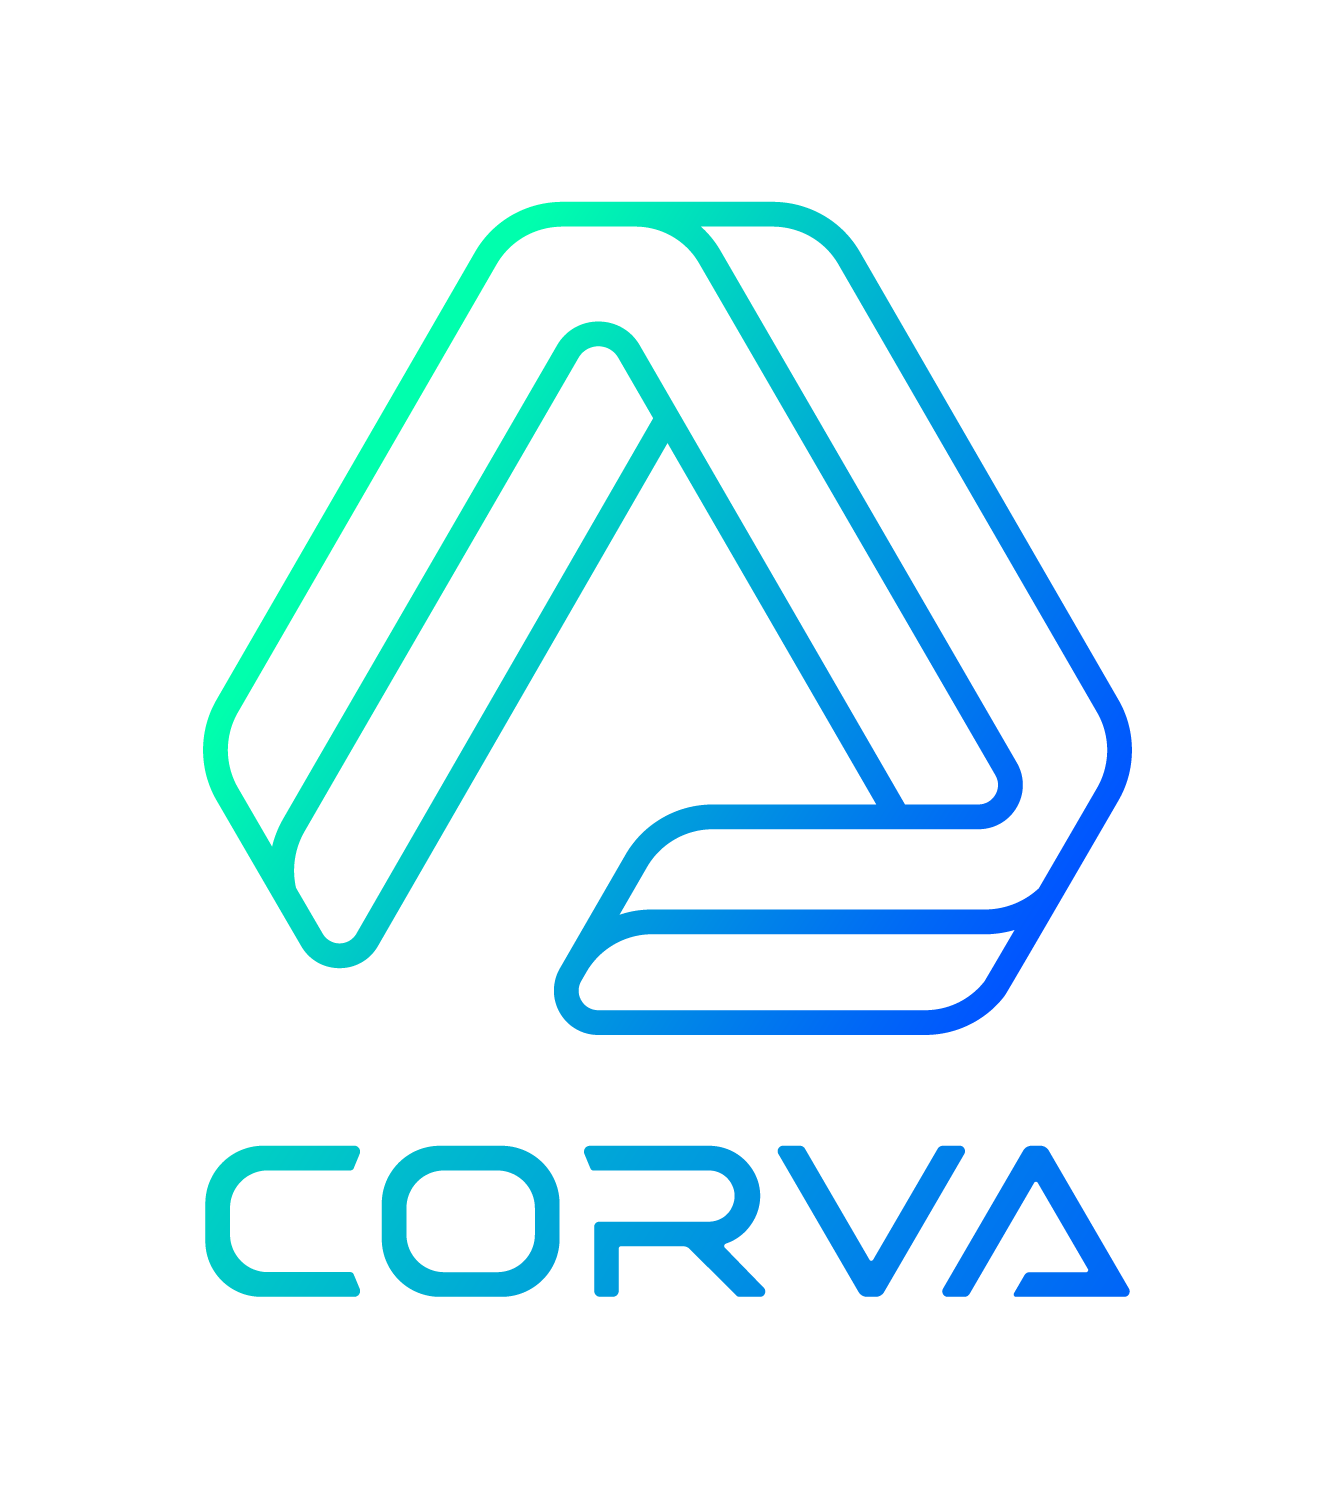 CORVA logo